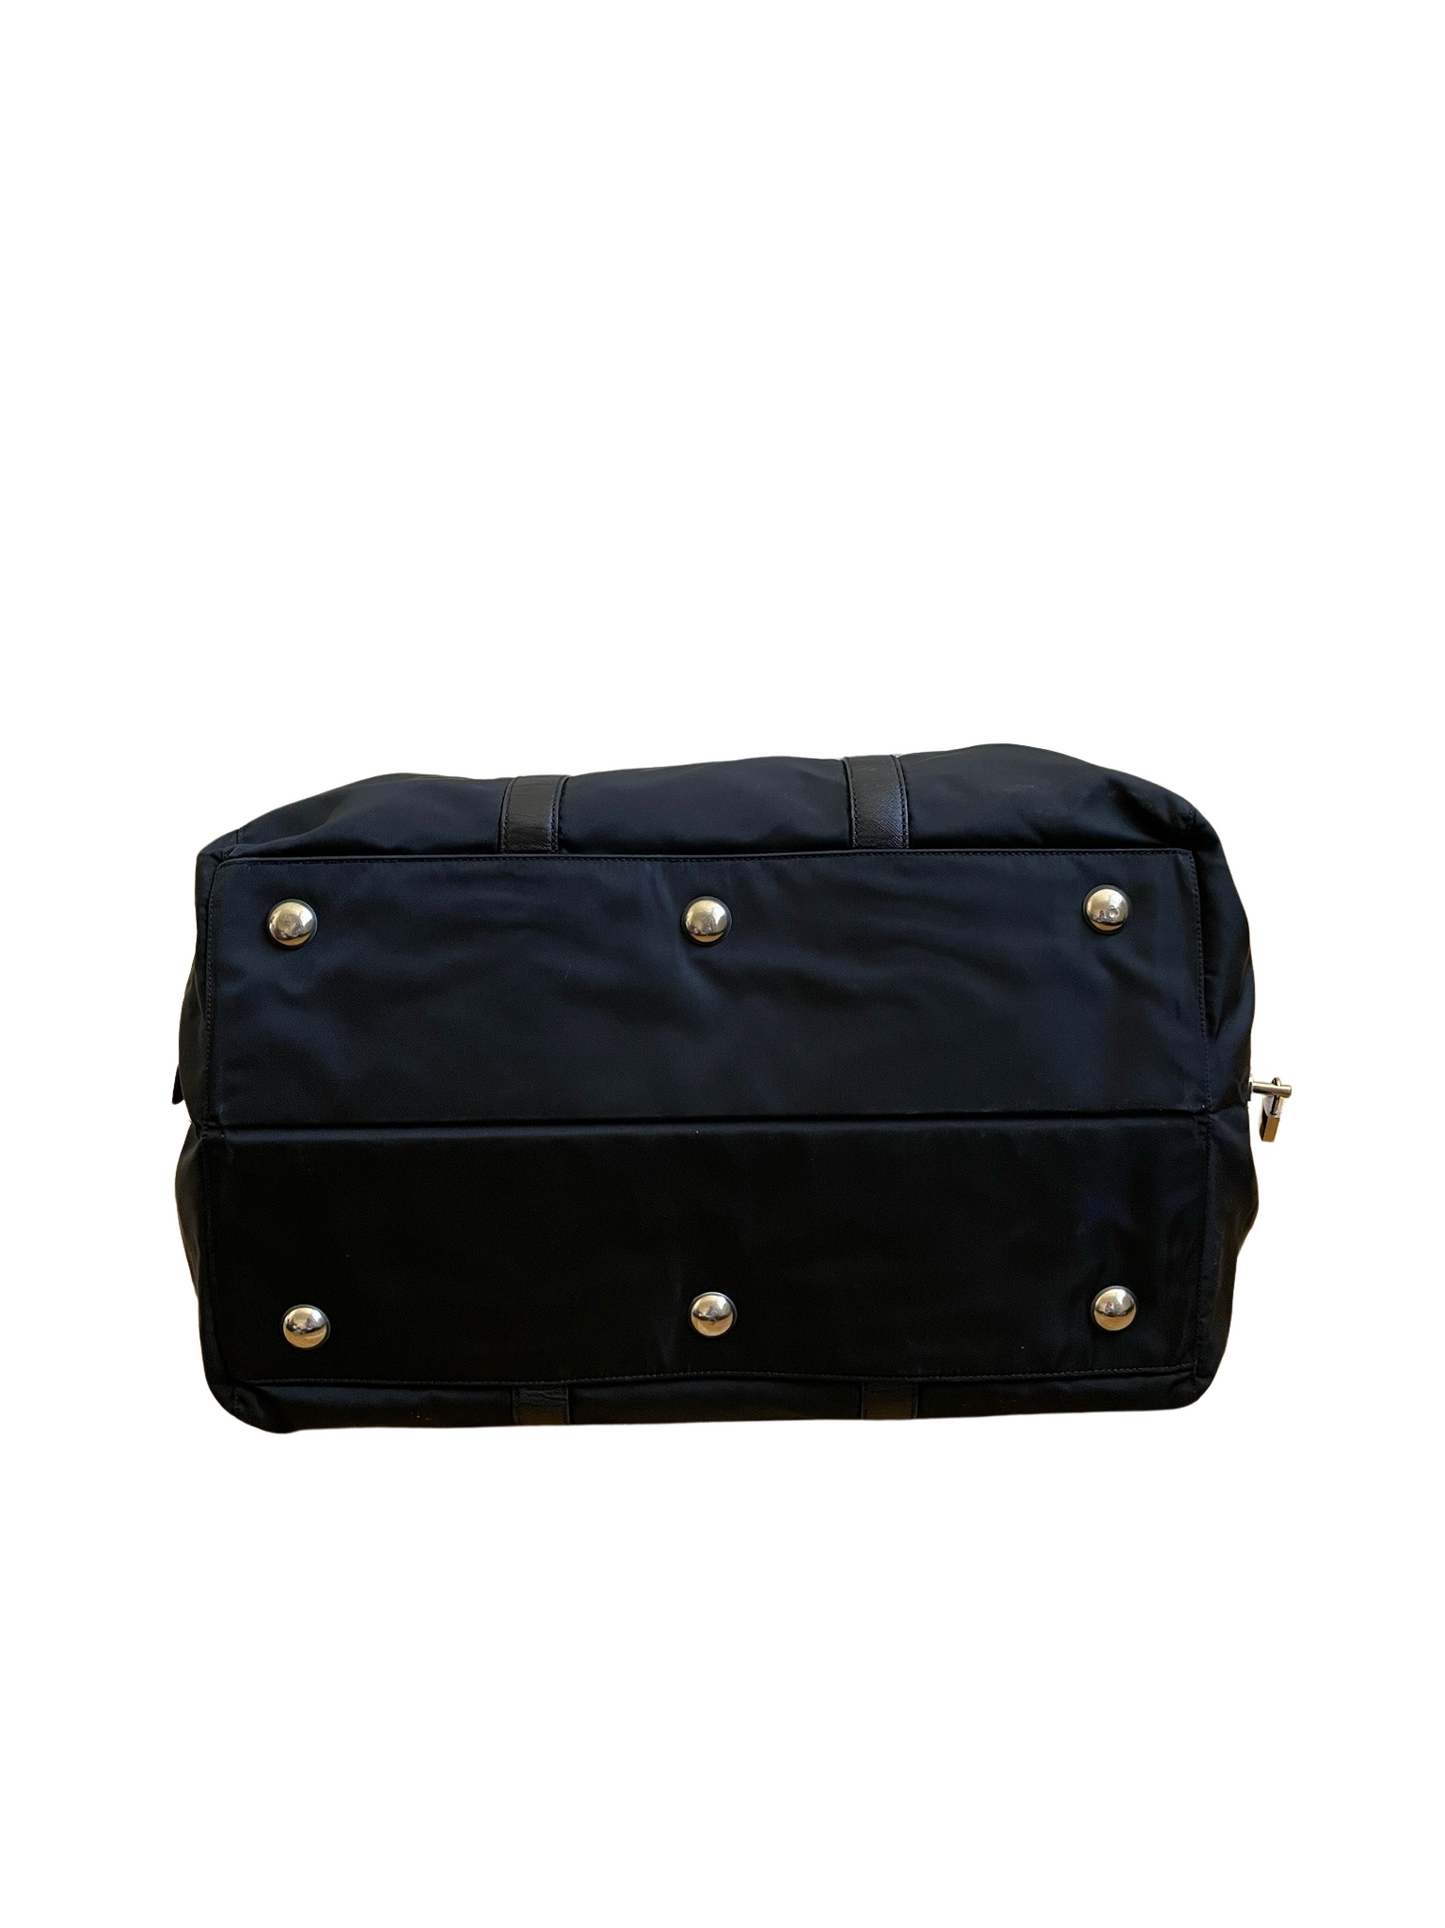 Prada Black Nylon & Leather Boston Bag